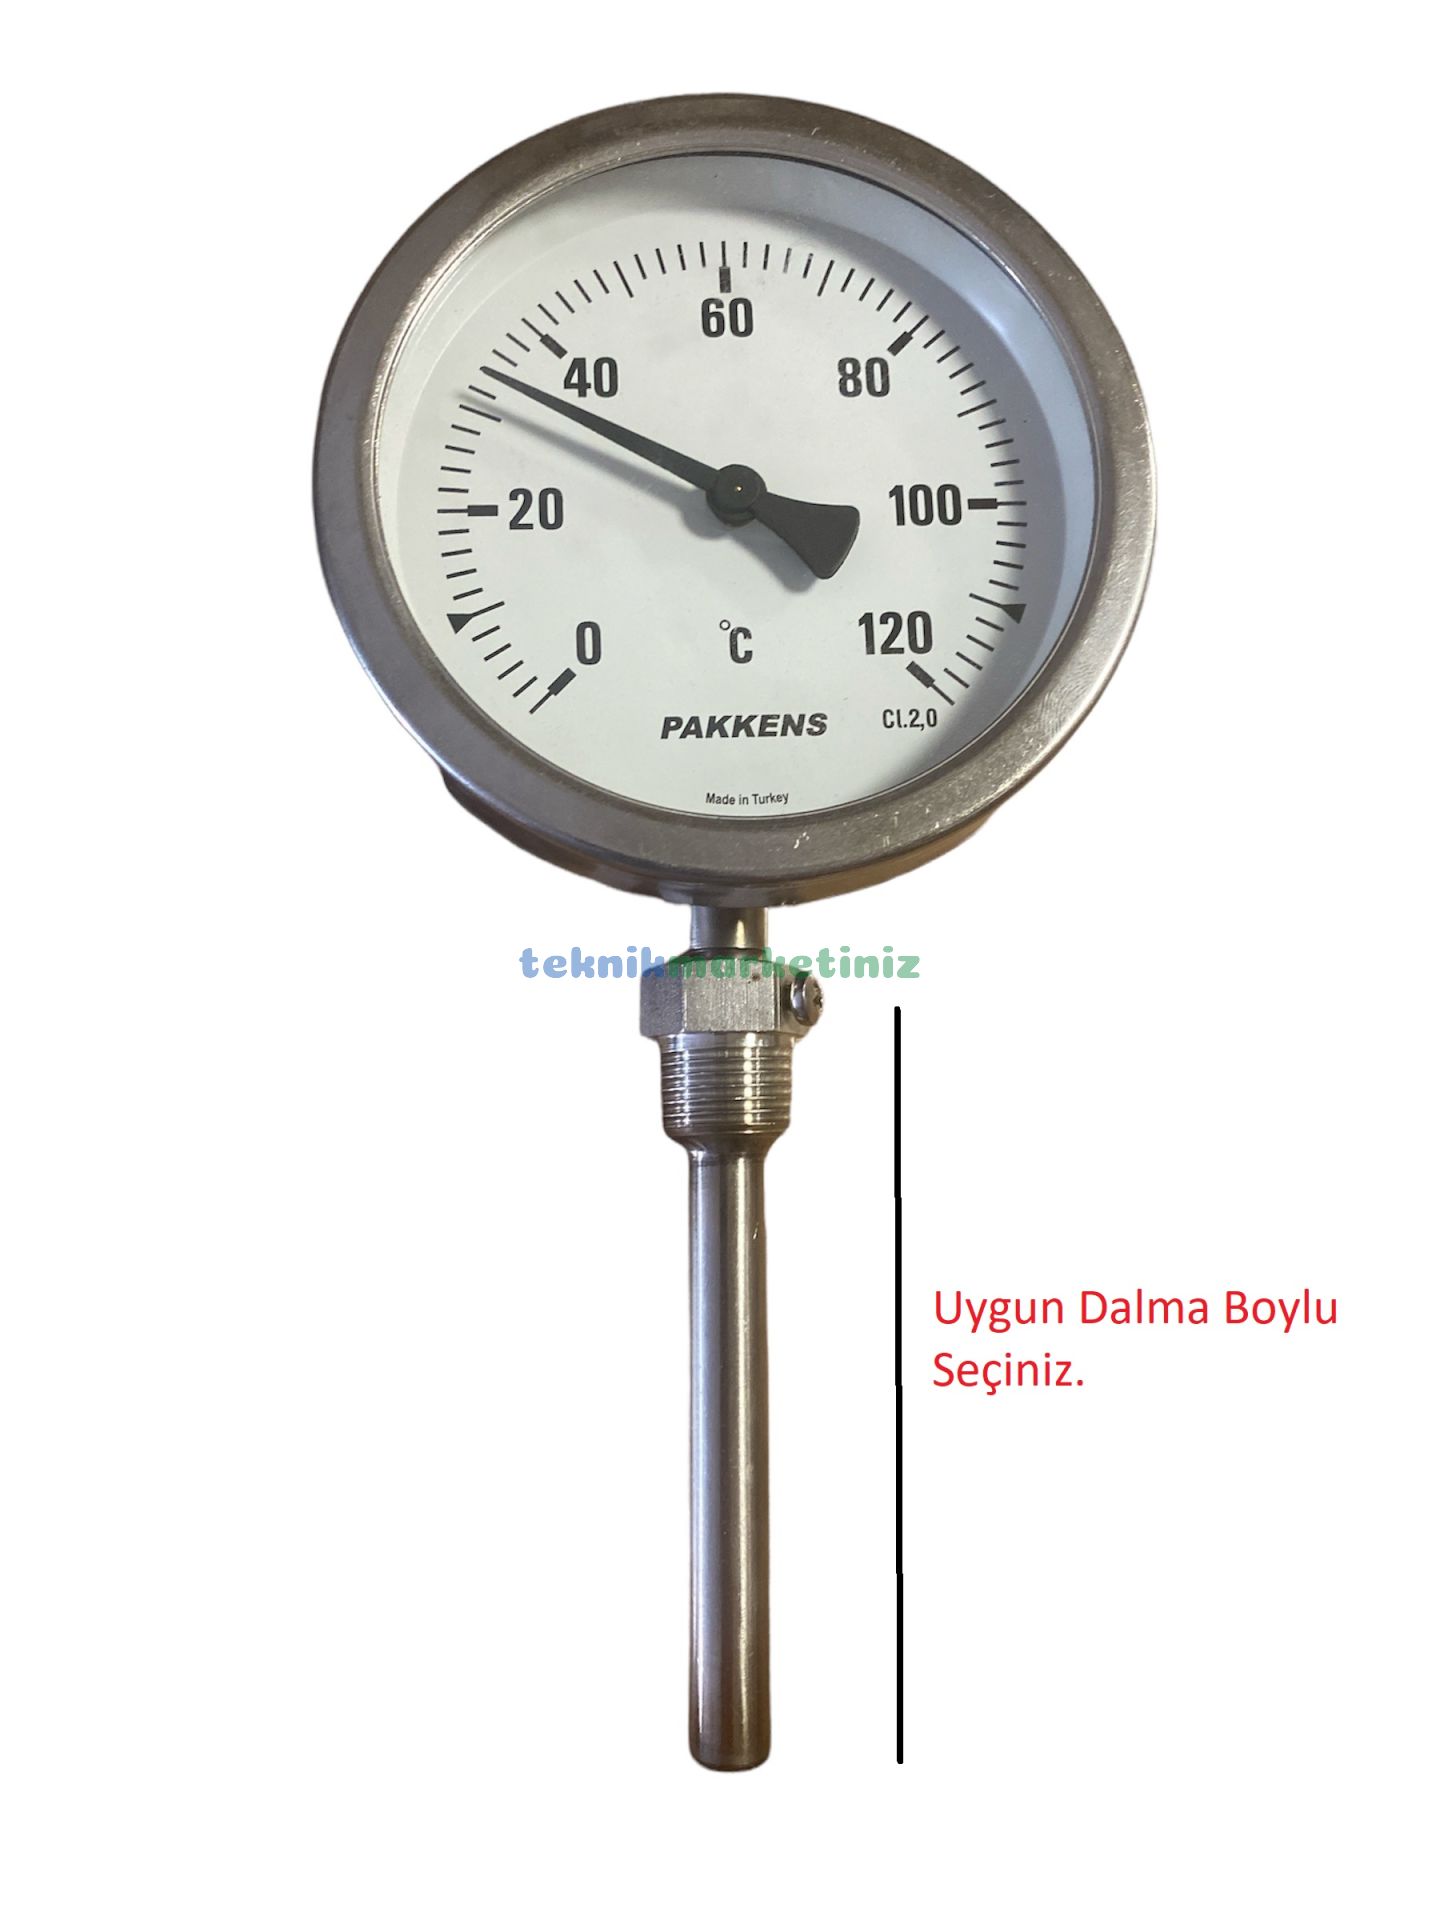 100mm-komple-paslanmaz-alttan-cikisli-g1-2-bi-metal-sicaklik-olcer-termometre-mekanik-isi-gosterge-saati-cl2-0-pakkens-100411-termometre-fiyati-ve-ozellikleri-ve-temsili resmi-ve-farklı-dalma-boylari